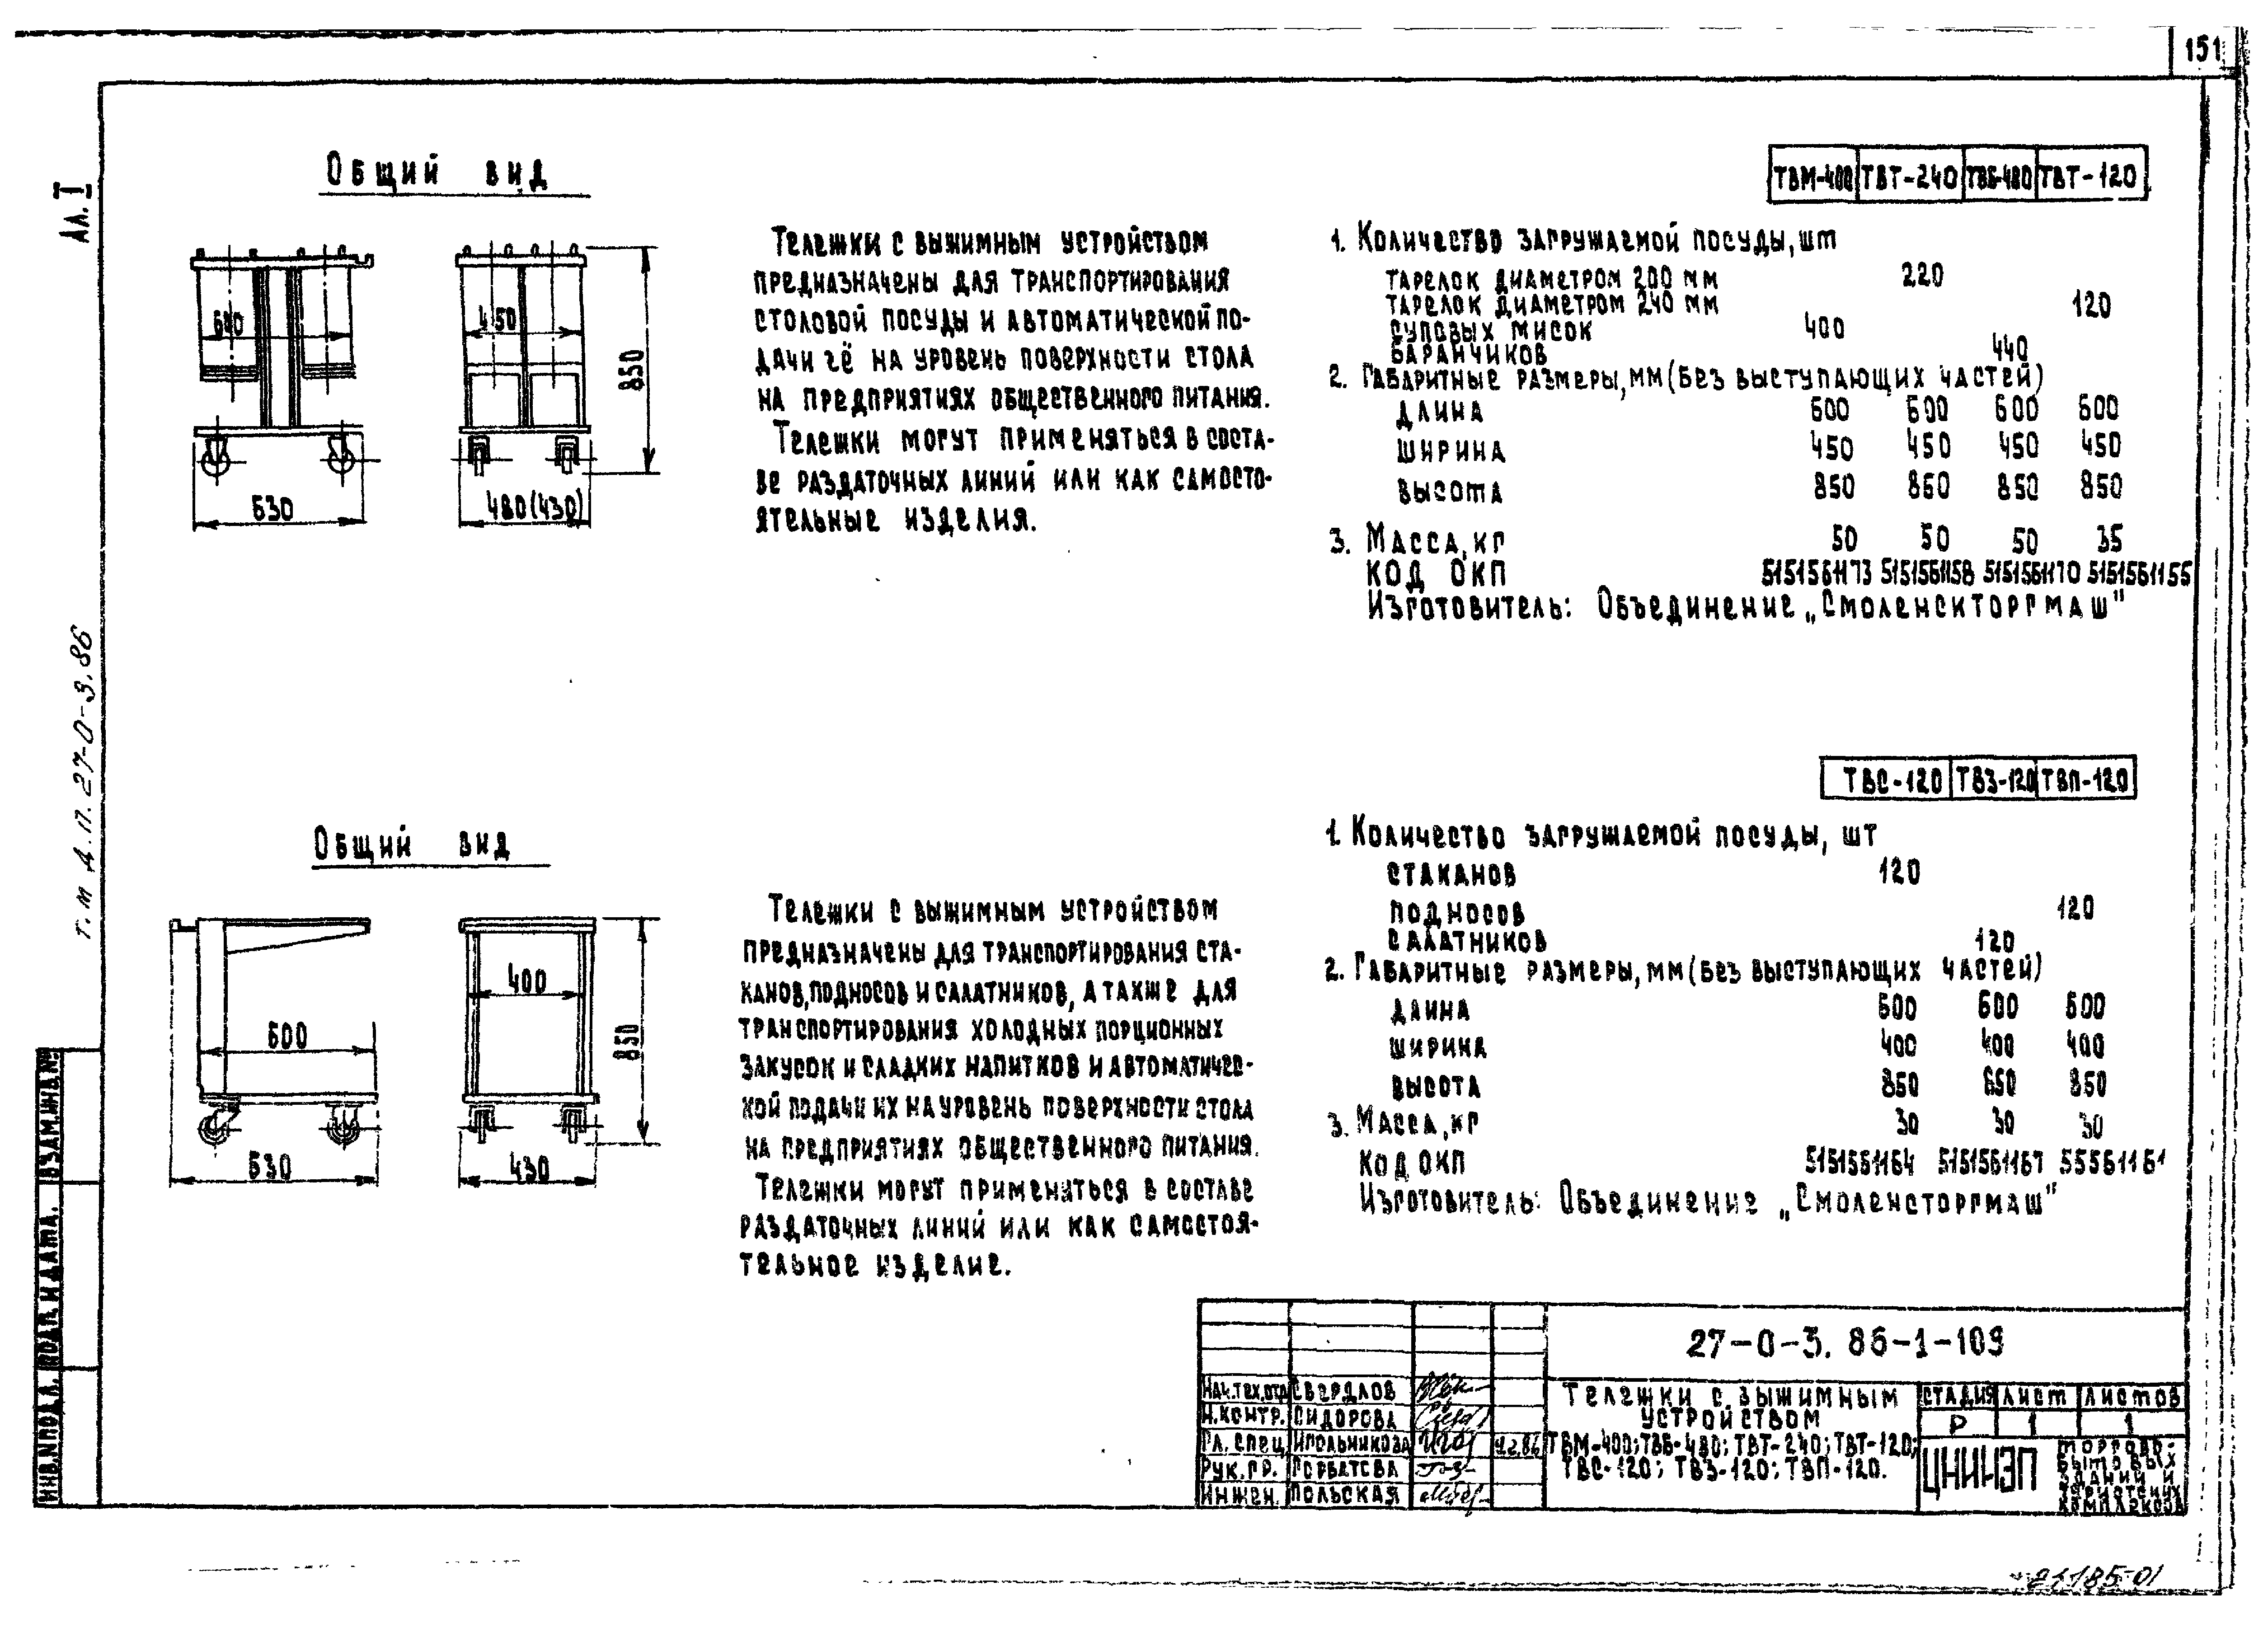 Типовые материалы для проектирования 27-0-3.86